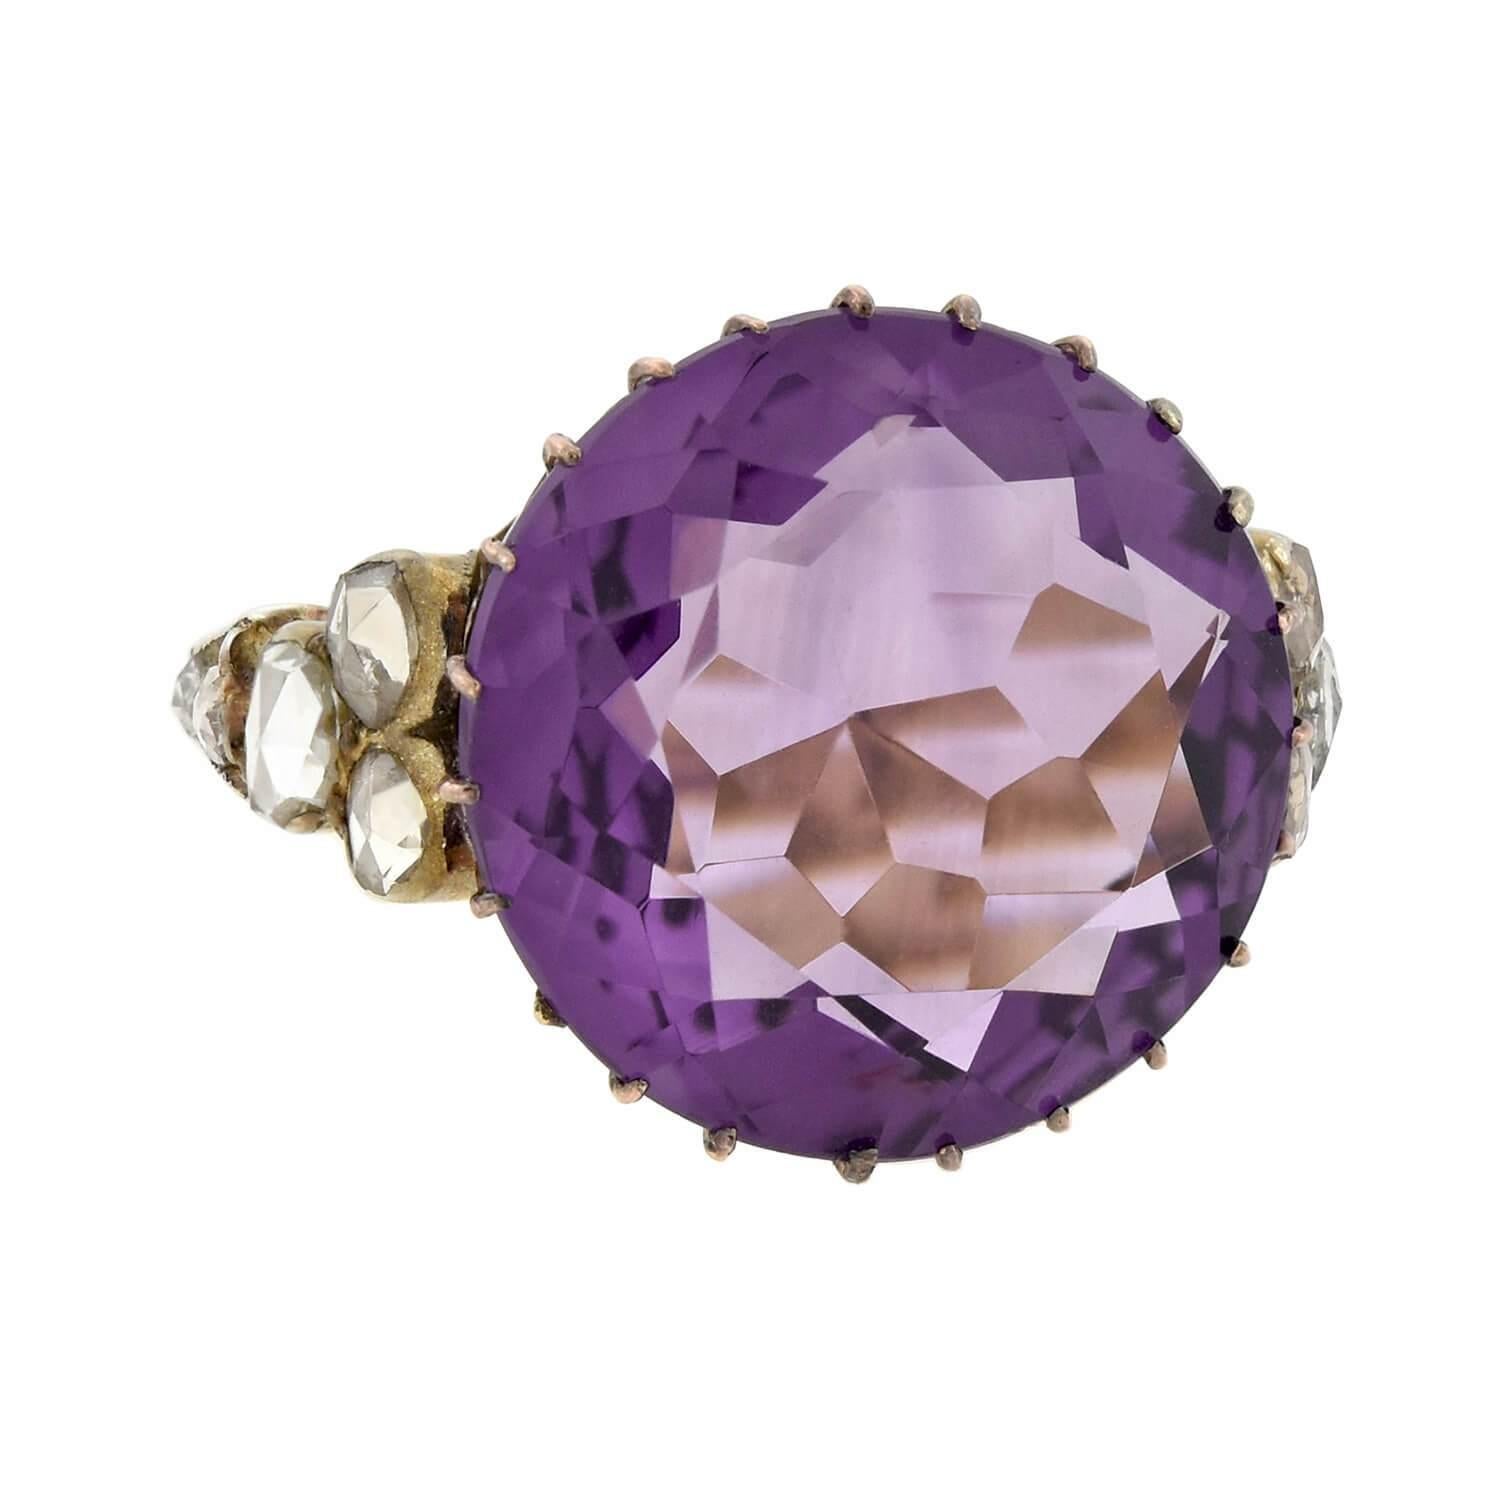 Une magnifique bague en améthyste et diamant de l'époque édouardienne (ca1910s) ! Réalisée en or 18 carats, cette pièce saisissante présente une améthyste de 14 carats maintenue par des griffes en or rose. La pierre ronde, d'un violet royal